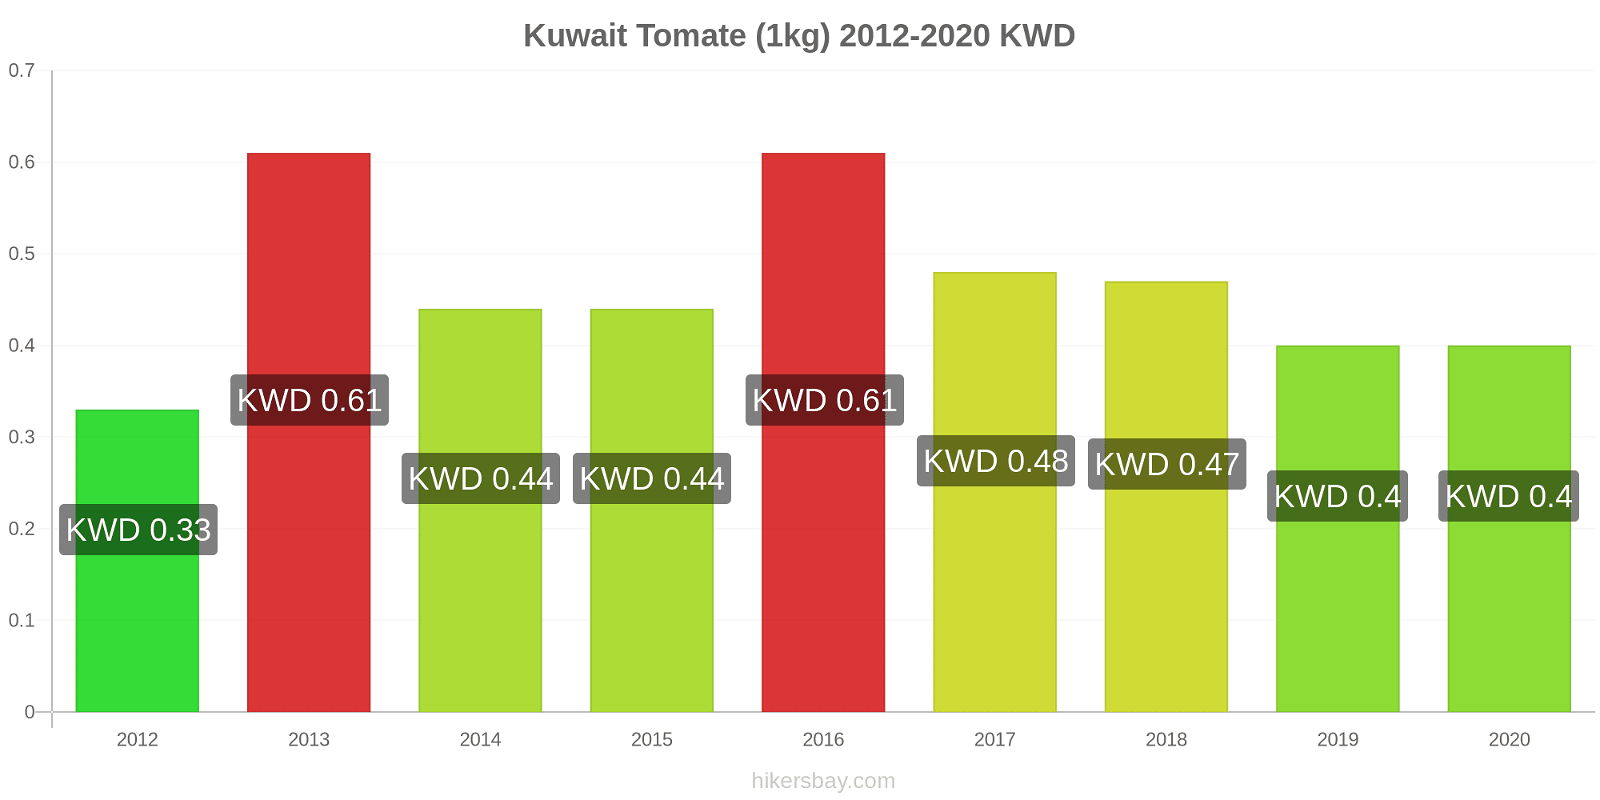 Kuwait cambios de precios Tomate (1kg) hikersbay.com